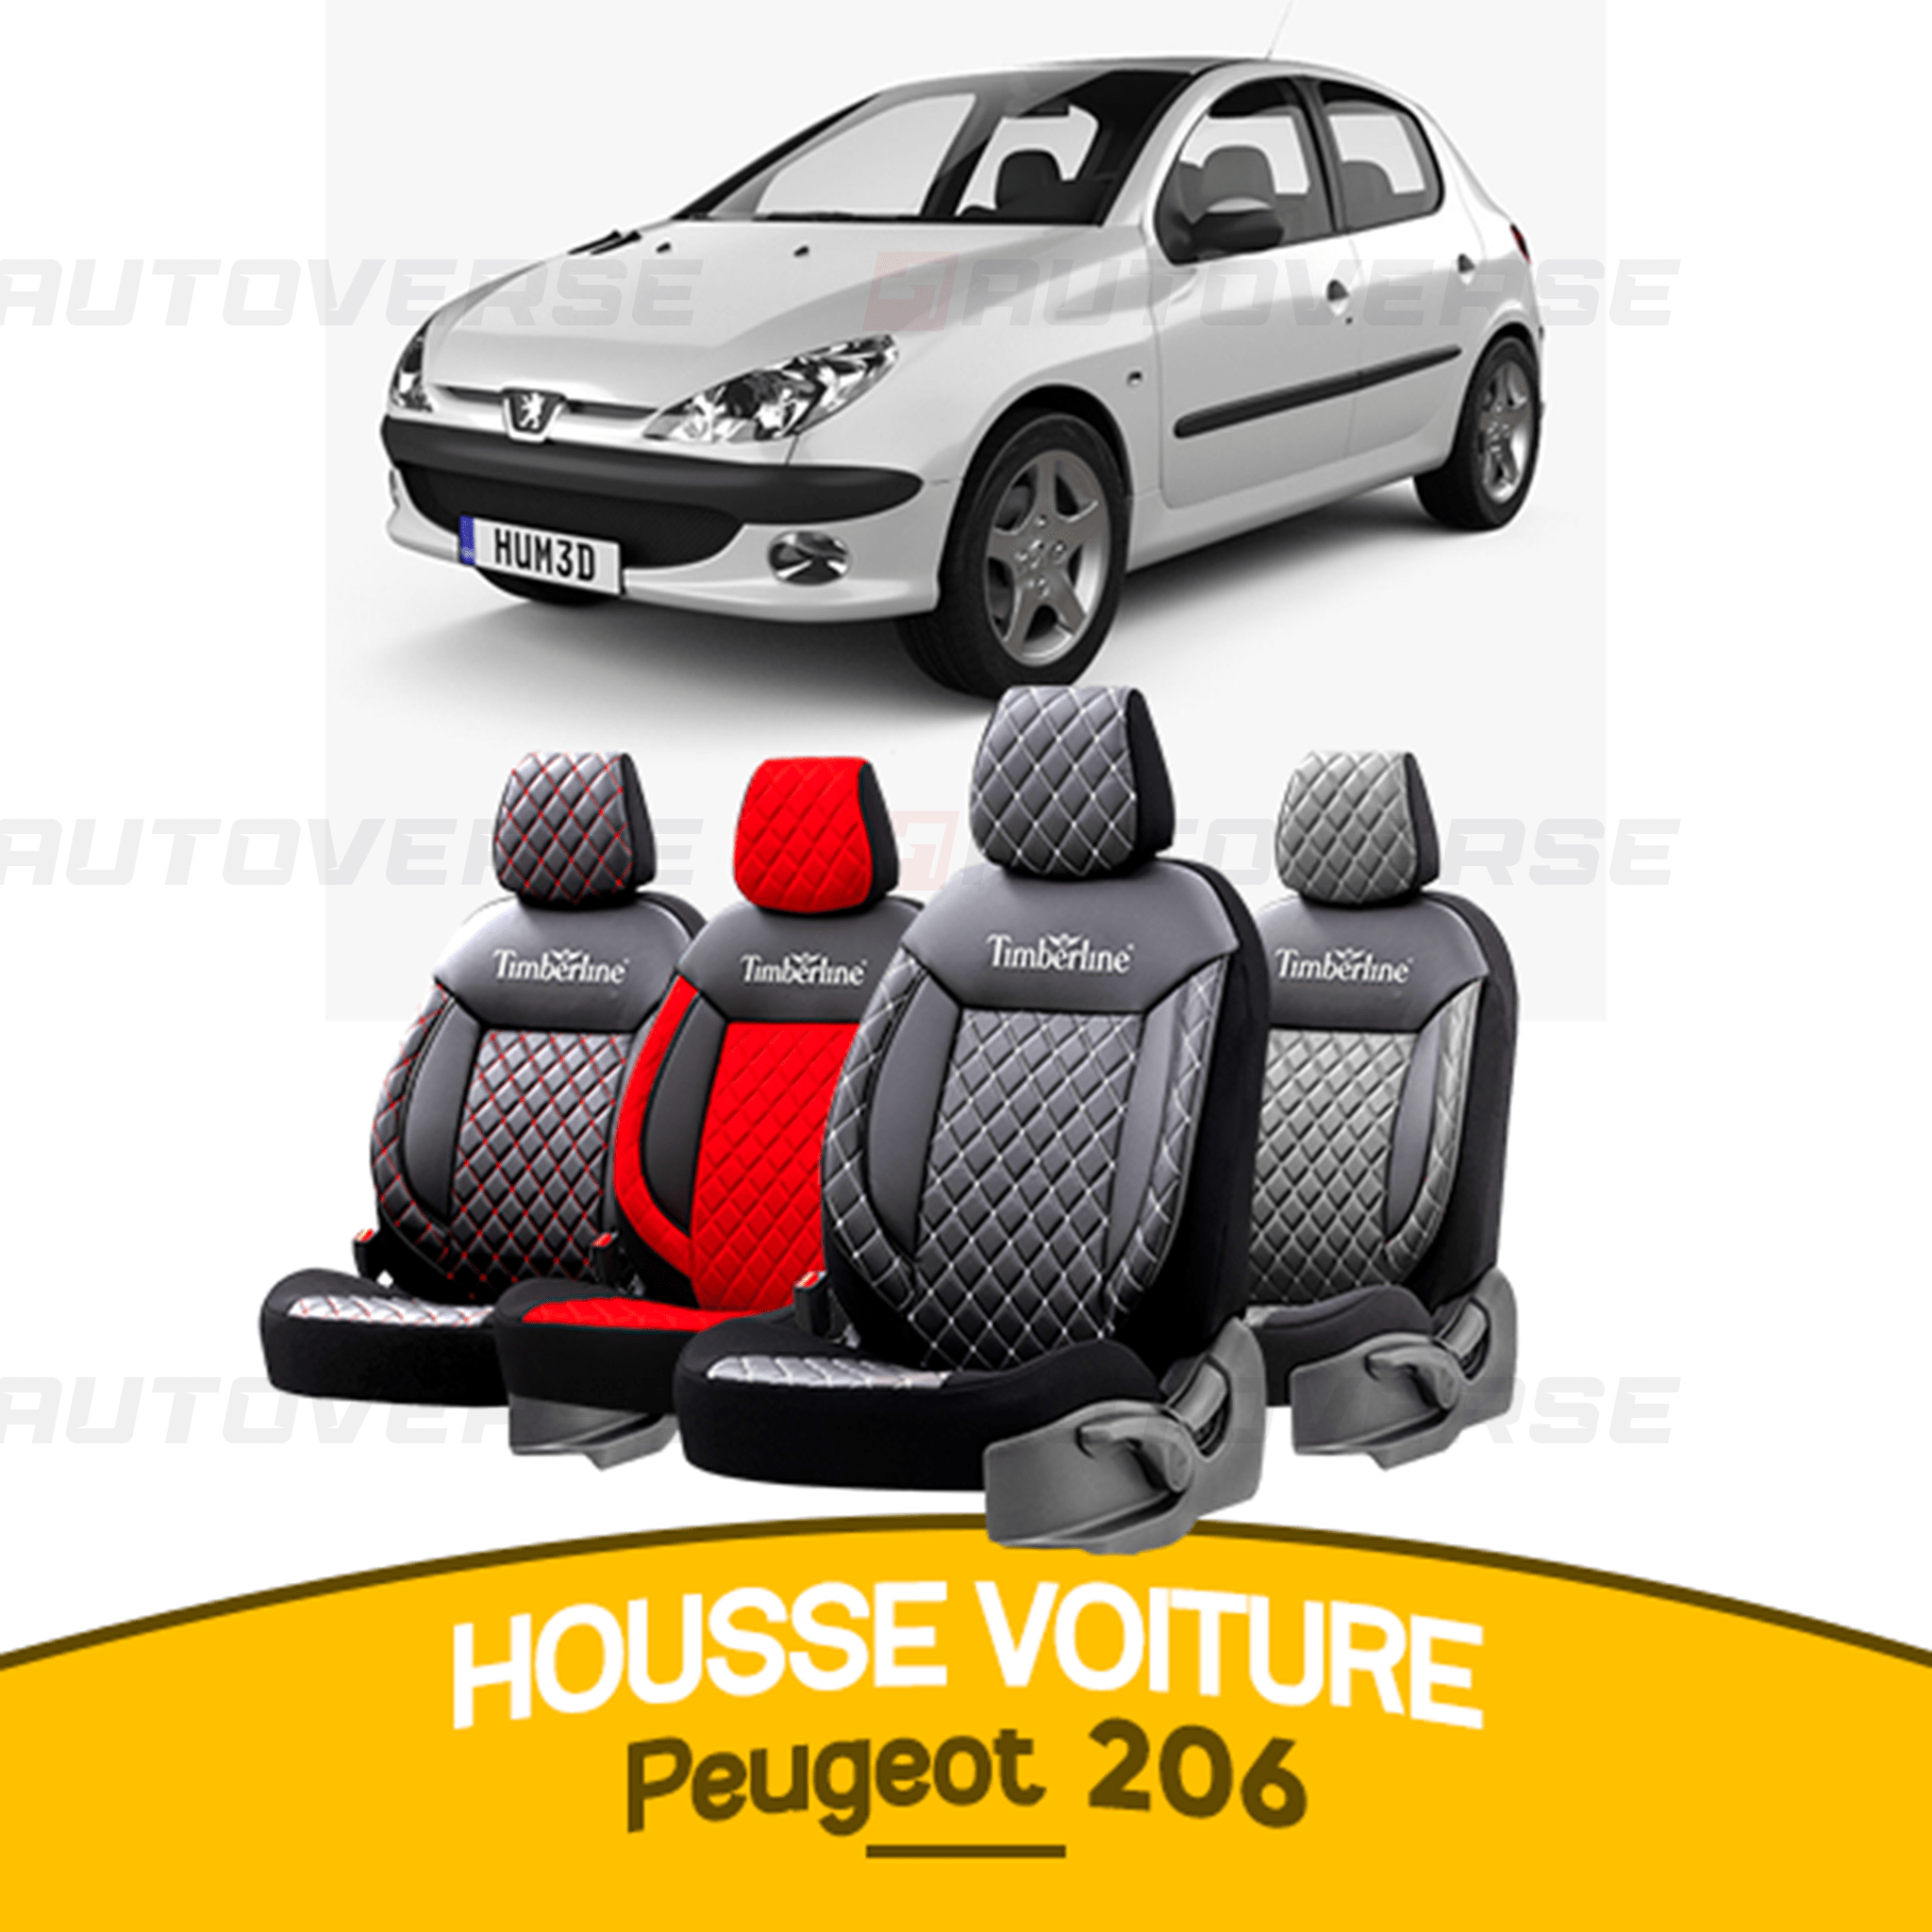 Couverture de protection de tableau de bord pour Peugeot